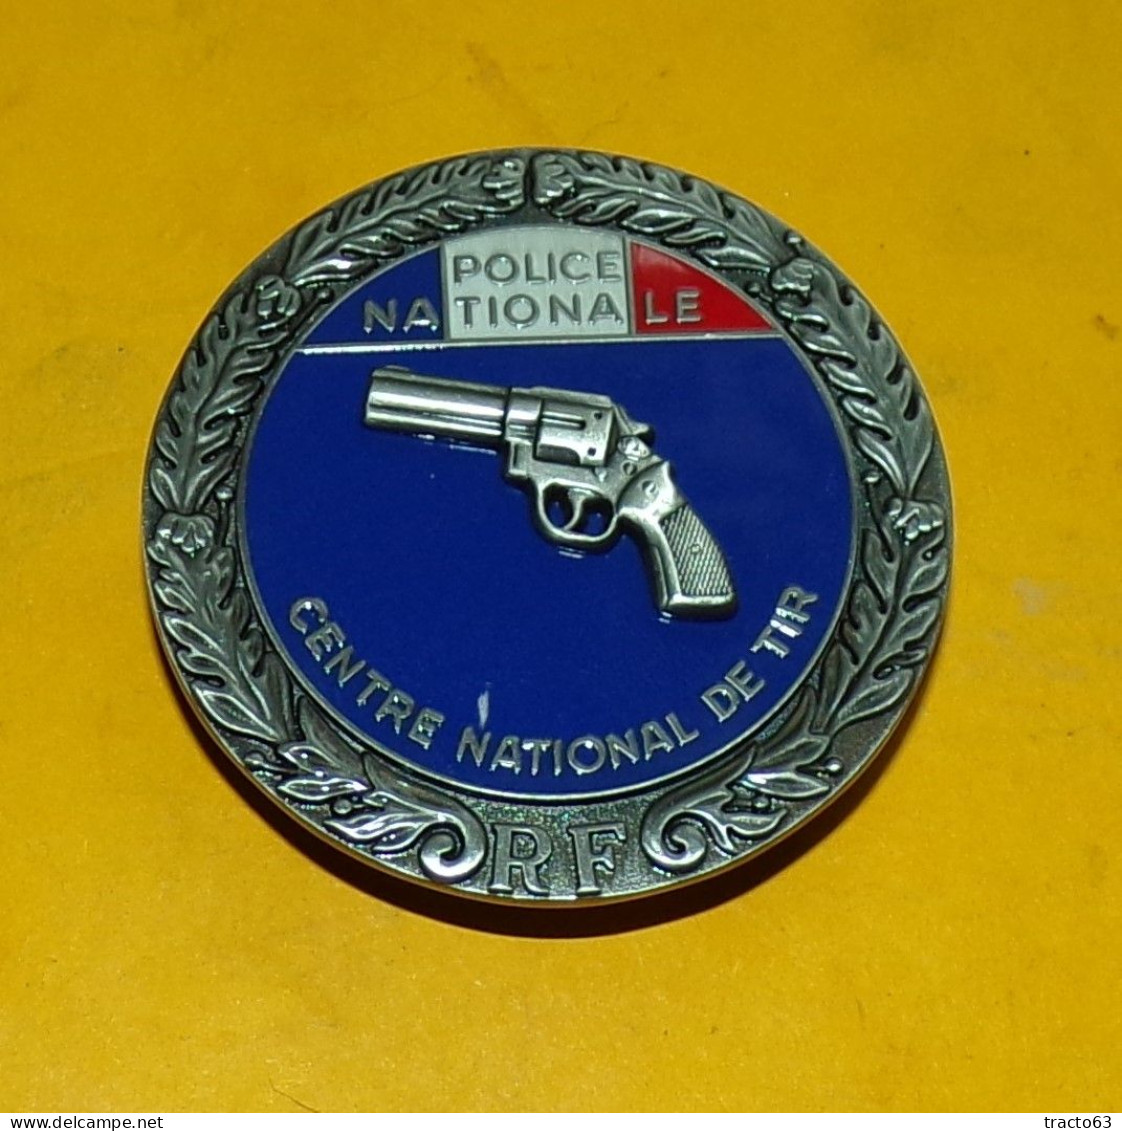 POLICE NATIONALE , CENTRE NATIONAL DE TIR ,REPUBLIQUE FRANCAISE , ECHELON ARGENT , FABRICANT BOUSSEMART BY PROMODIS 201 - Police & Gendarmerie